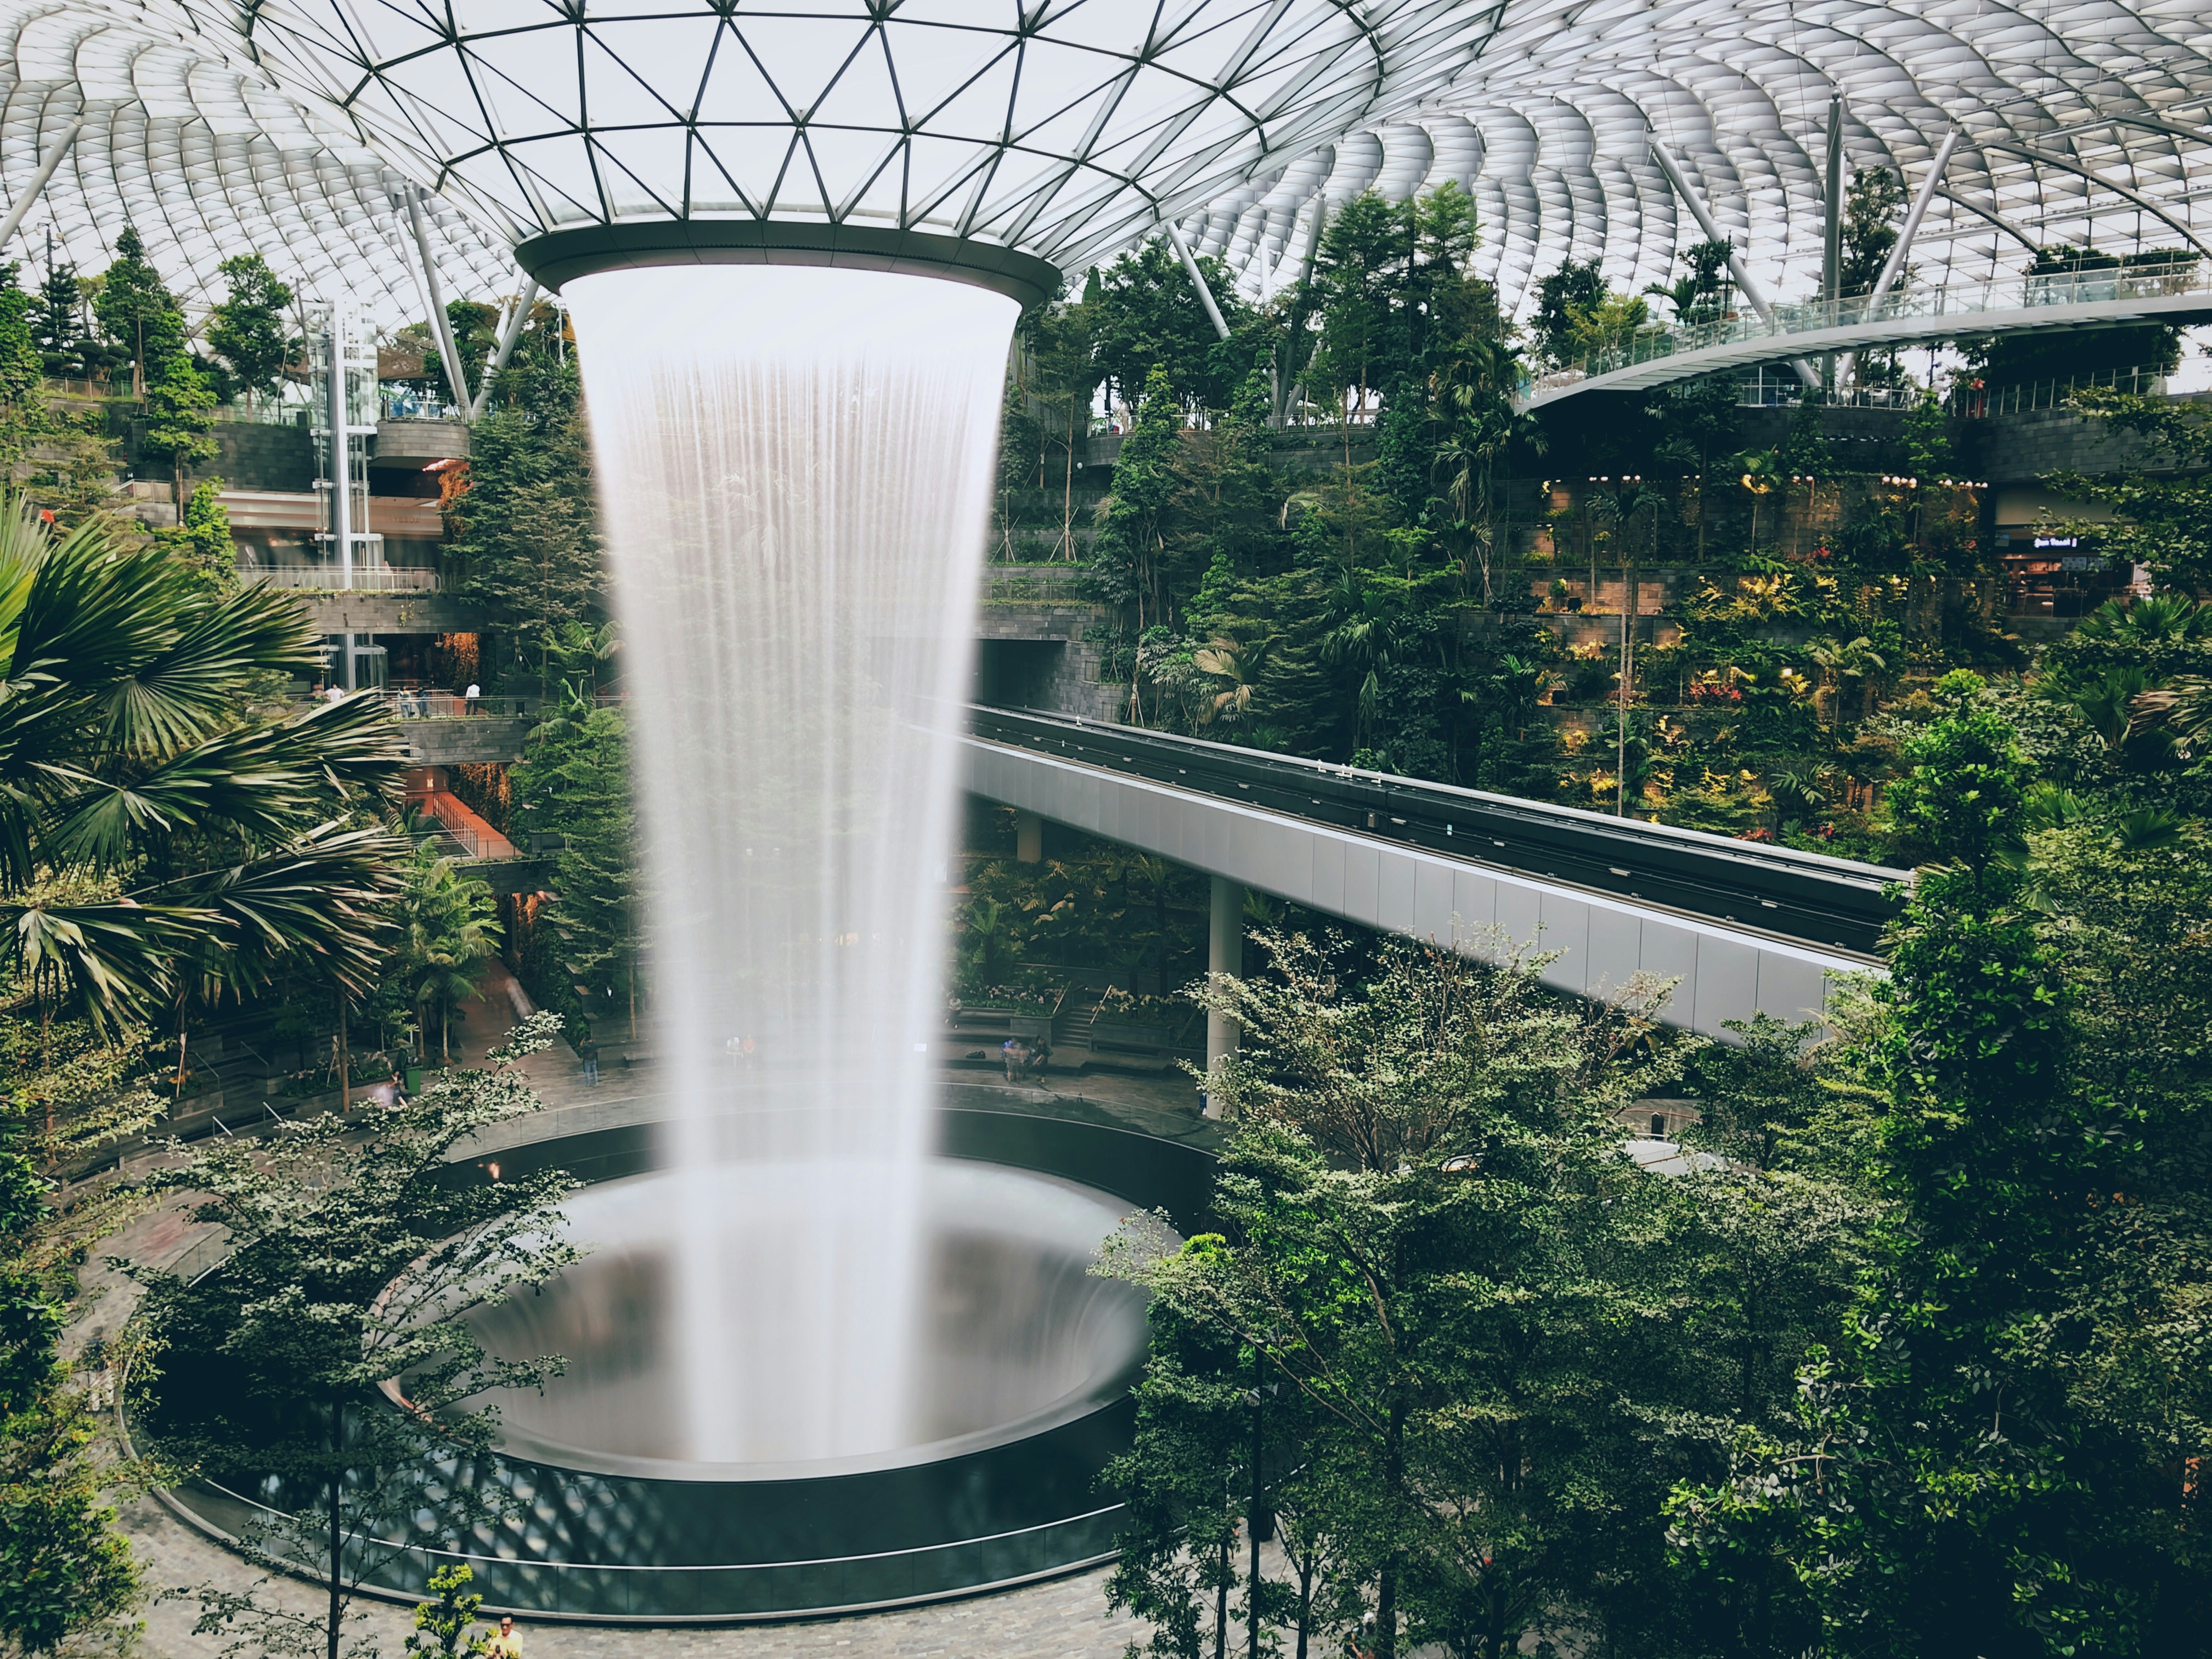 The Rain Vortex indoor waterfall at Singapore's Jewel Changi international airport.